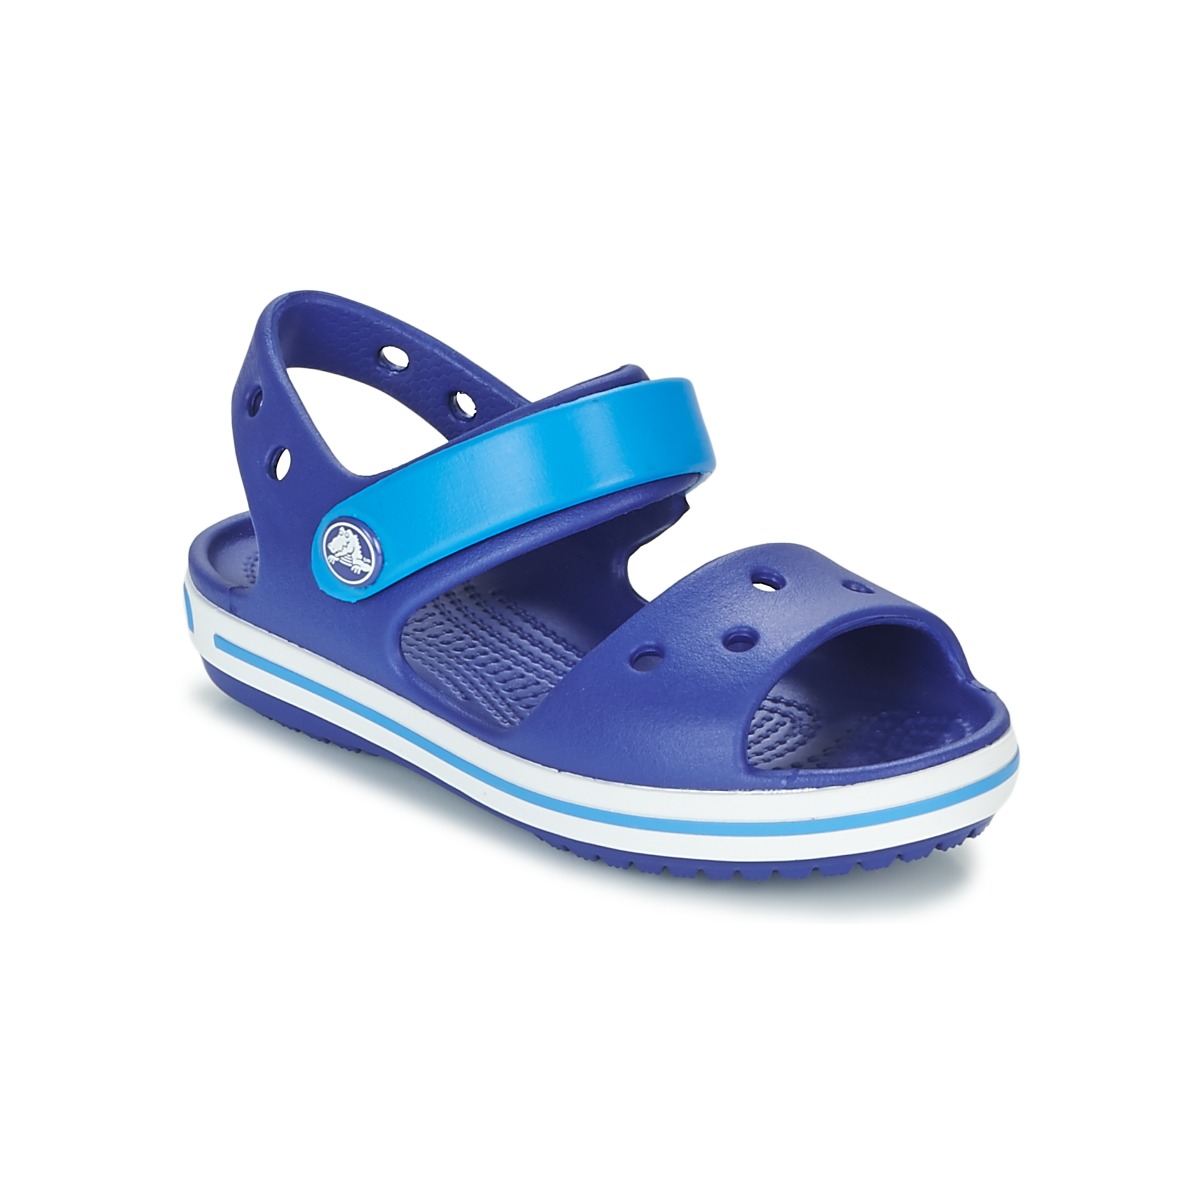 Sapatos Criança Sandálias Crocs CROCBAND SANDAL KIDS Azul